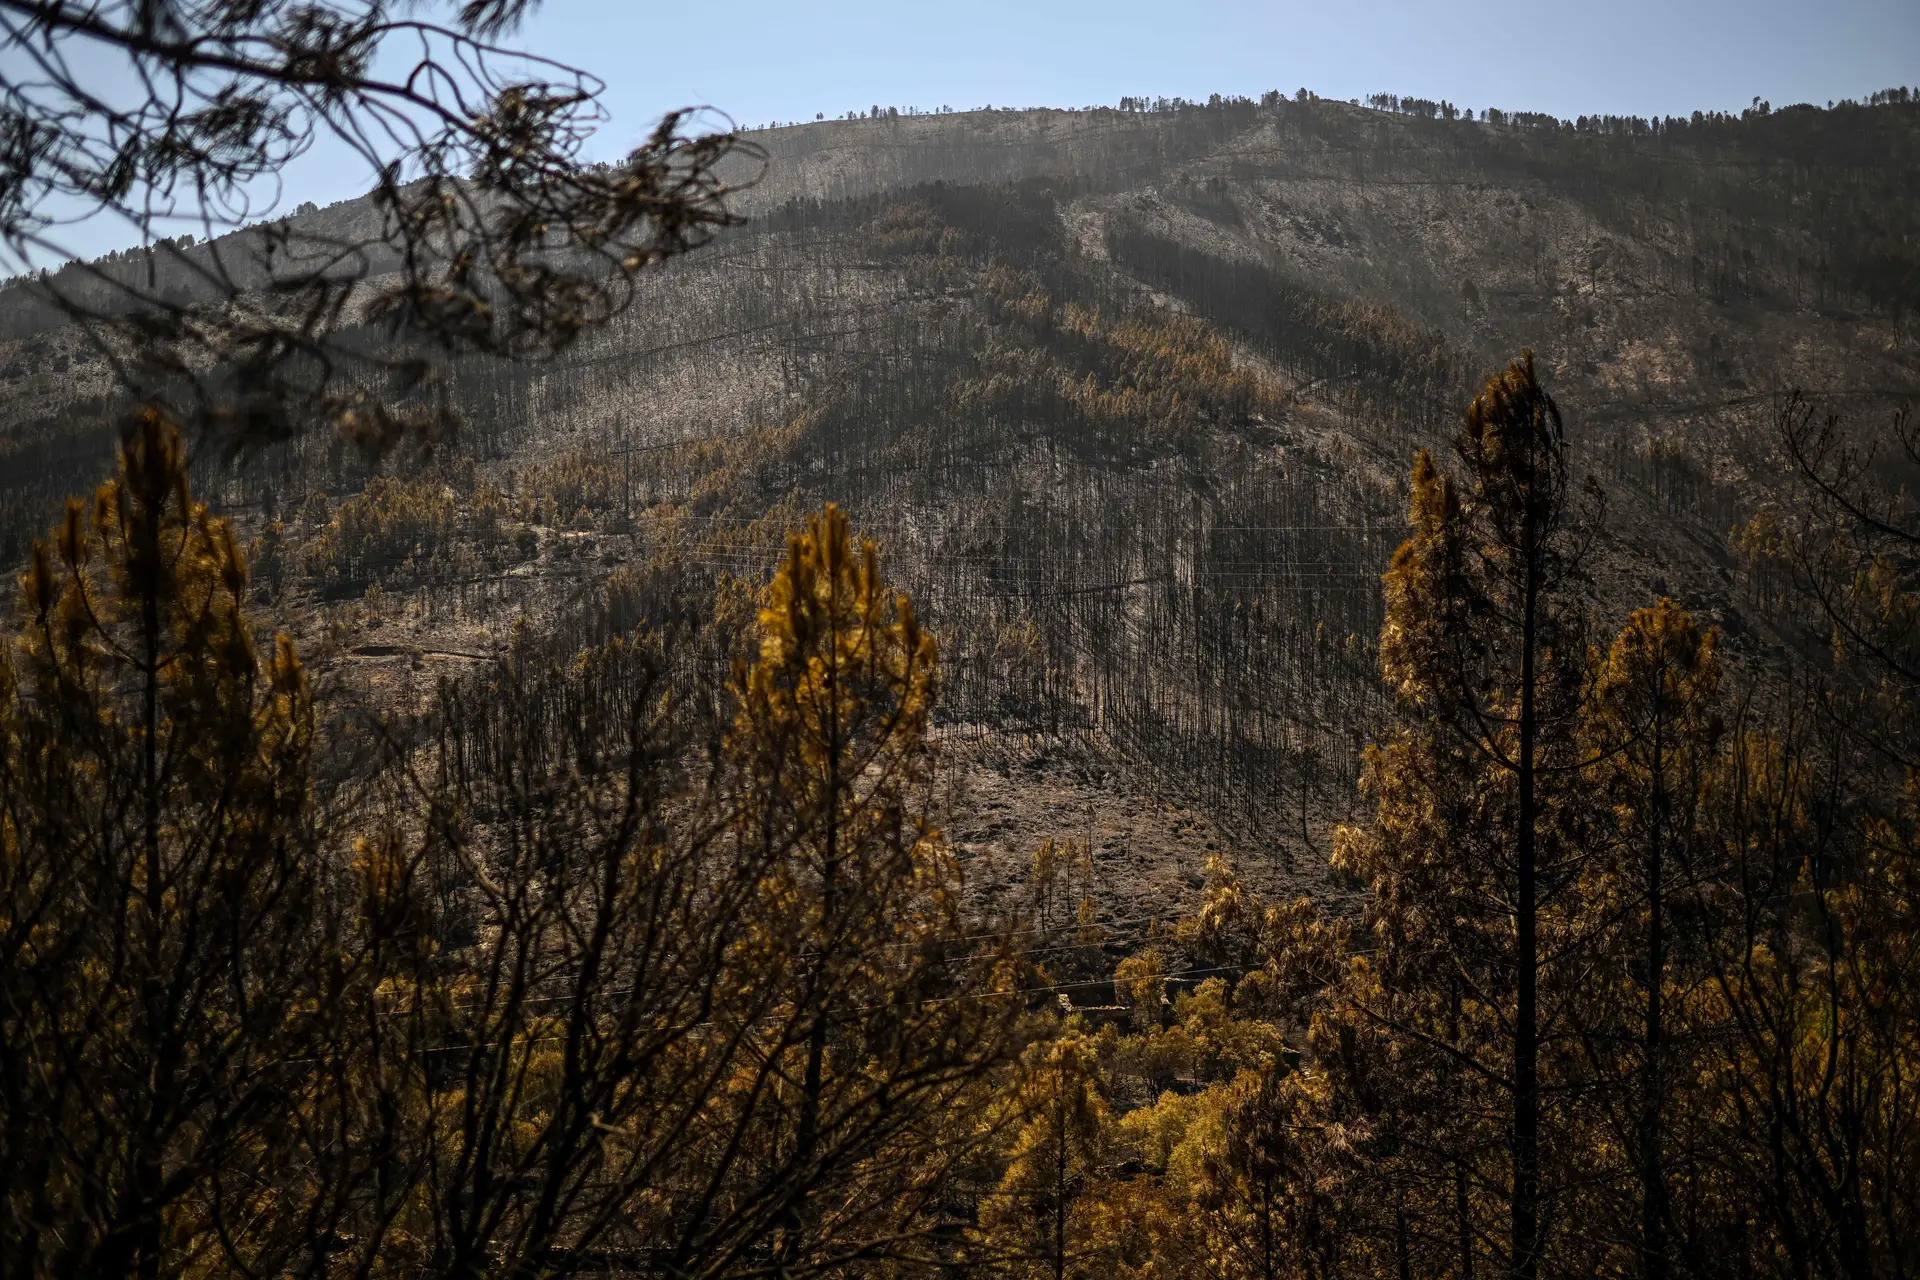 Incêndio na Serra da Estrela: "prioridade" é recuperar ecossistema do parque natural, diz ICNF